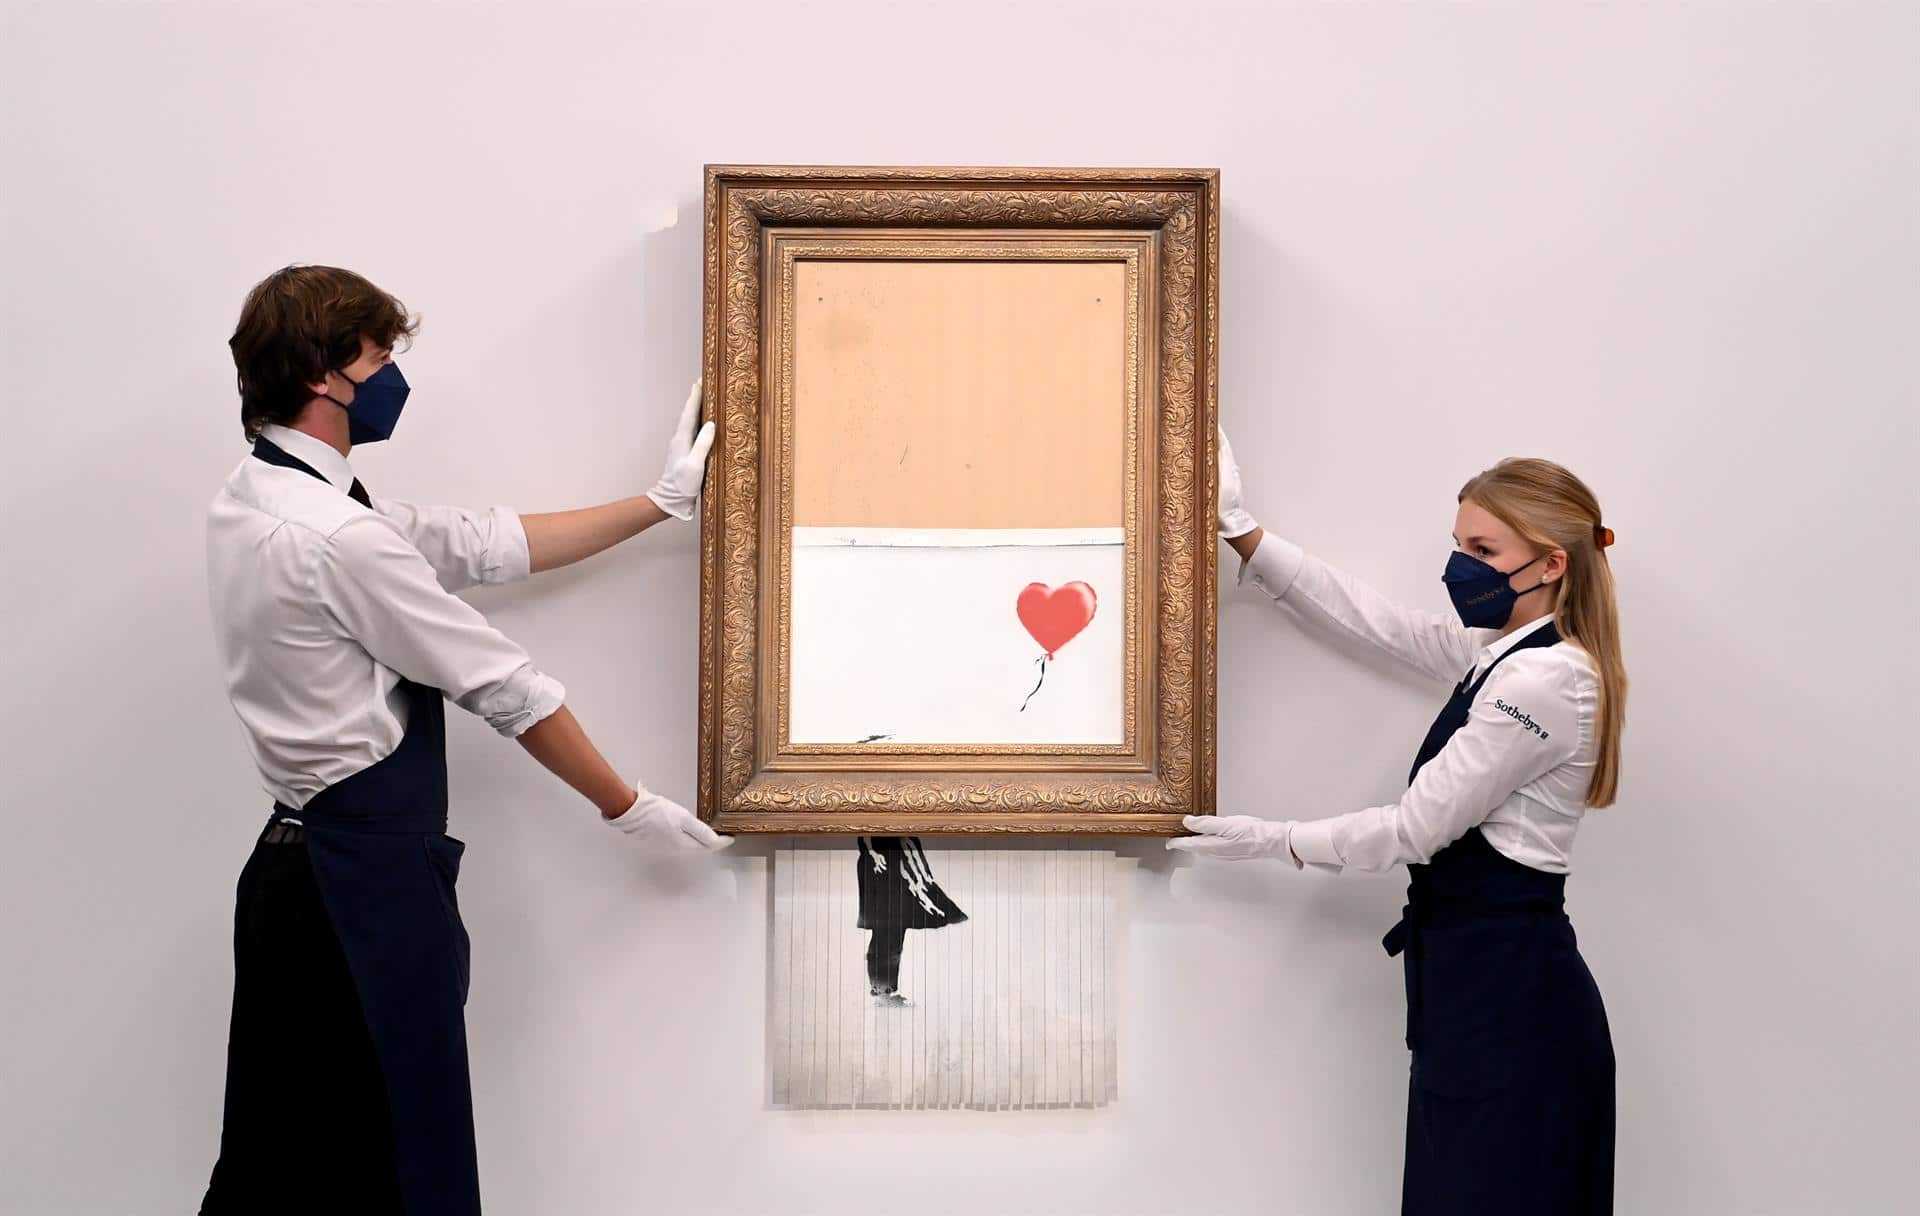 Pintura titulada 'Love is in the Bin' del artista callejero británico anónimo Banksy en la casa de subastas Sotheby's en Londres (EFE)